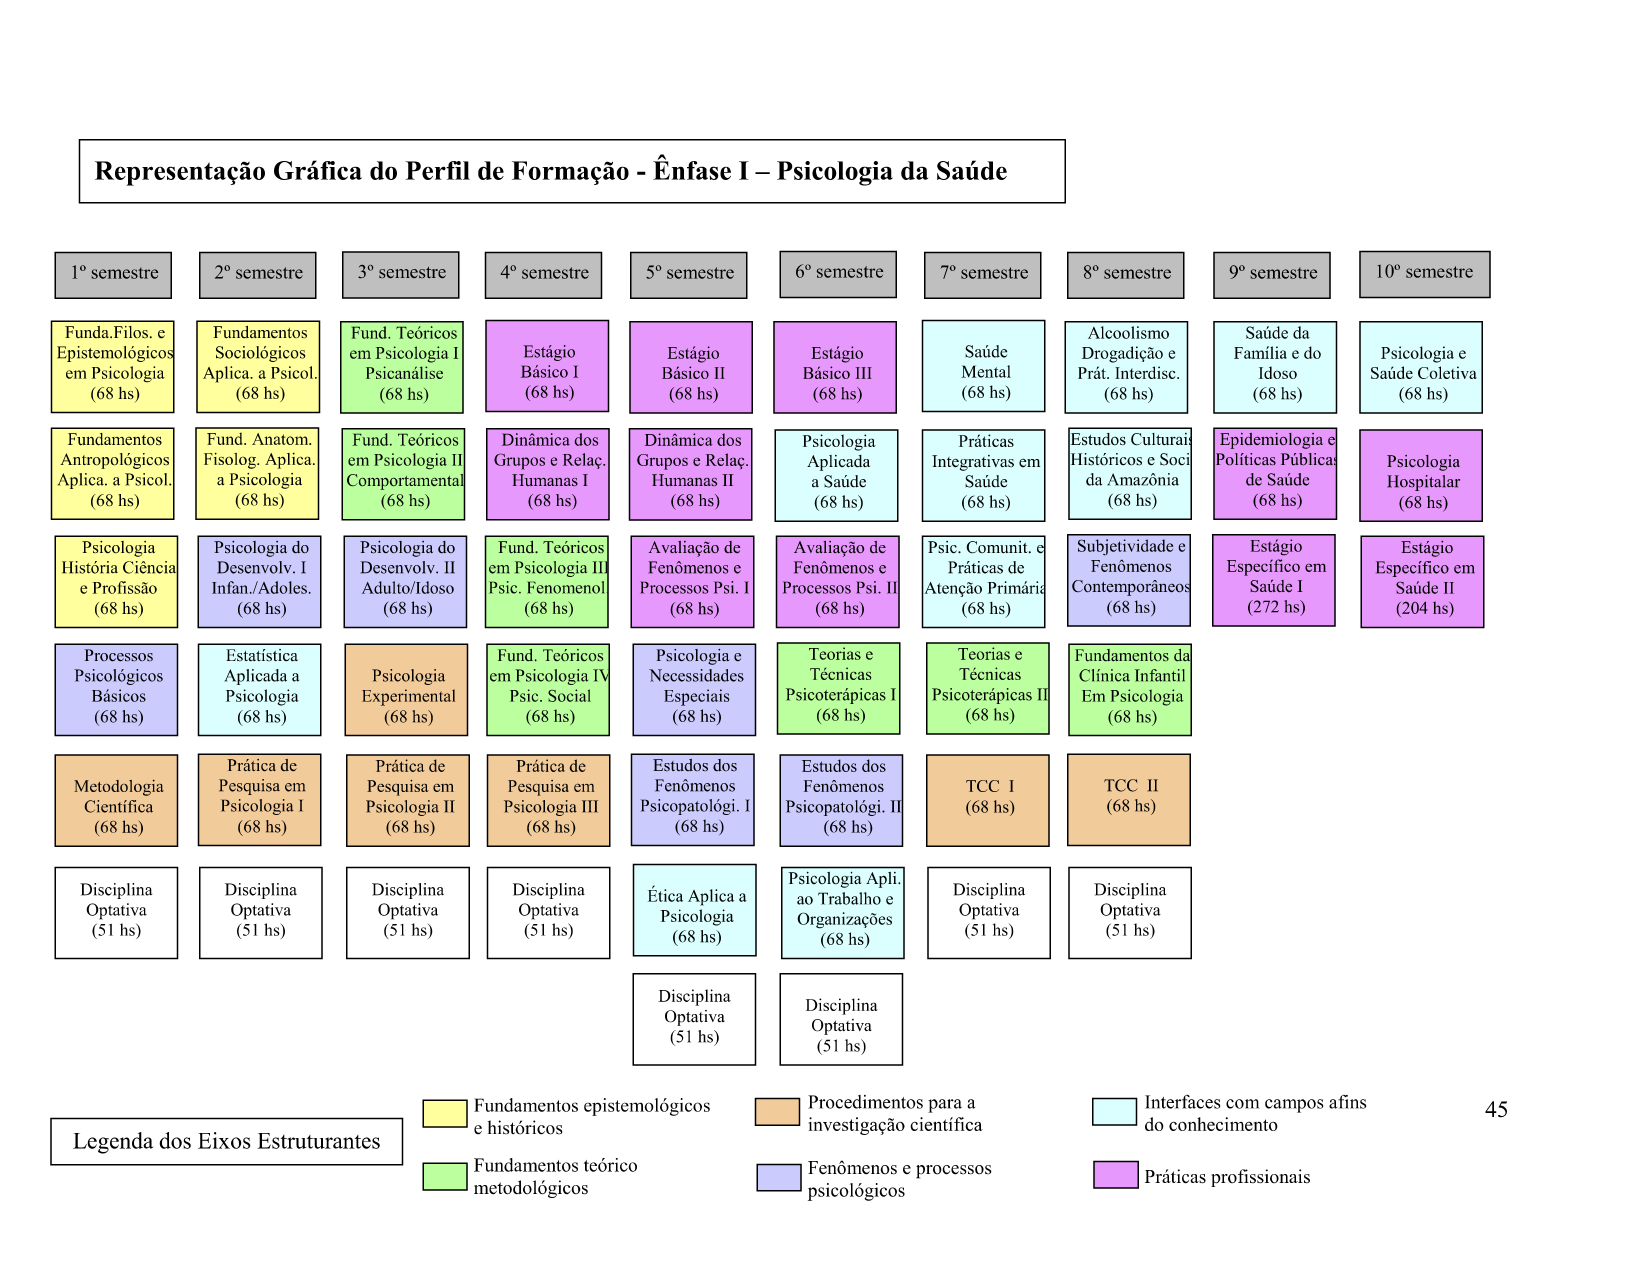 Representação gráfica do perfil de formação - Ênfase I - Psicologia da Saúde